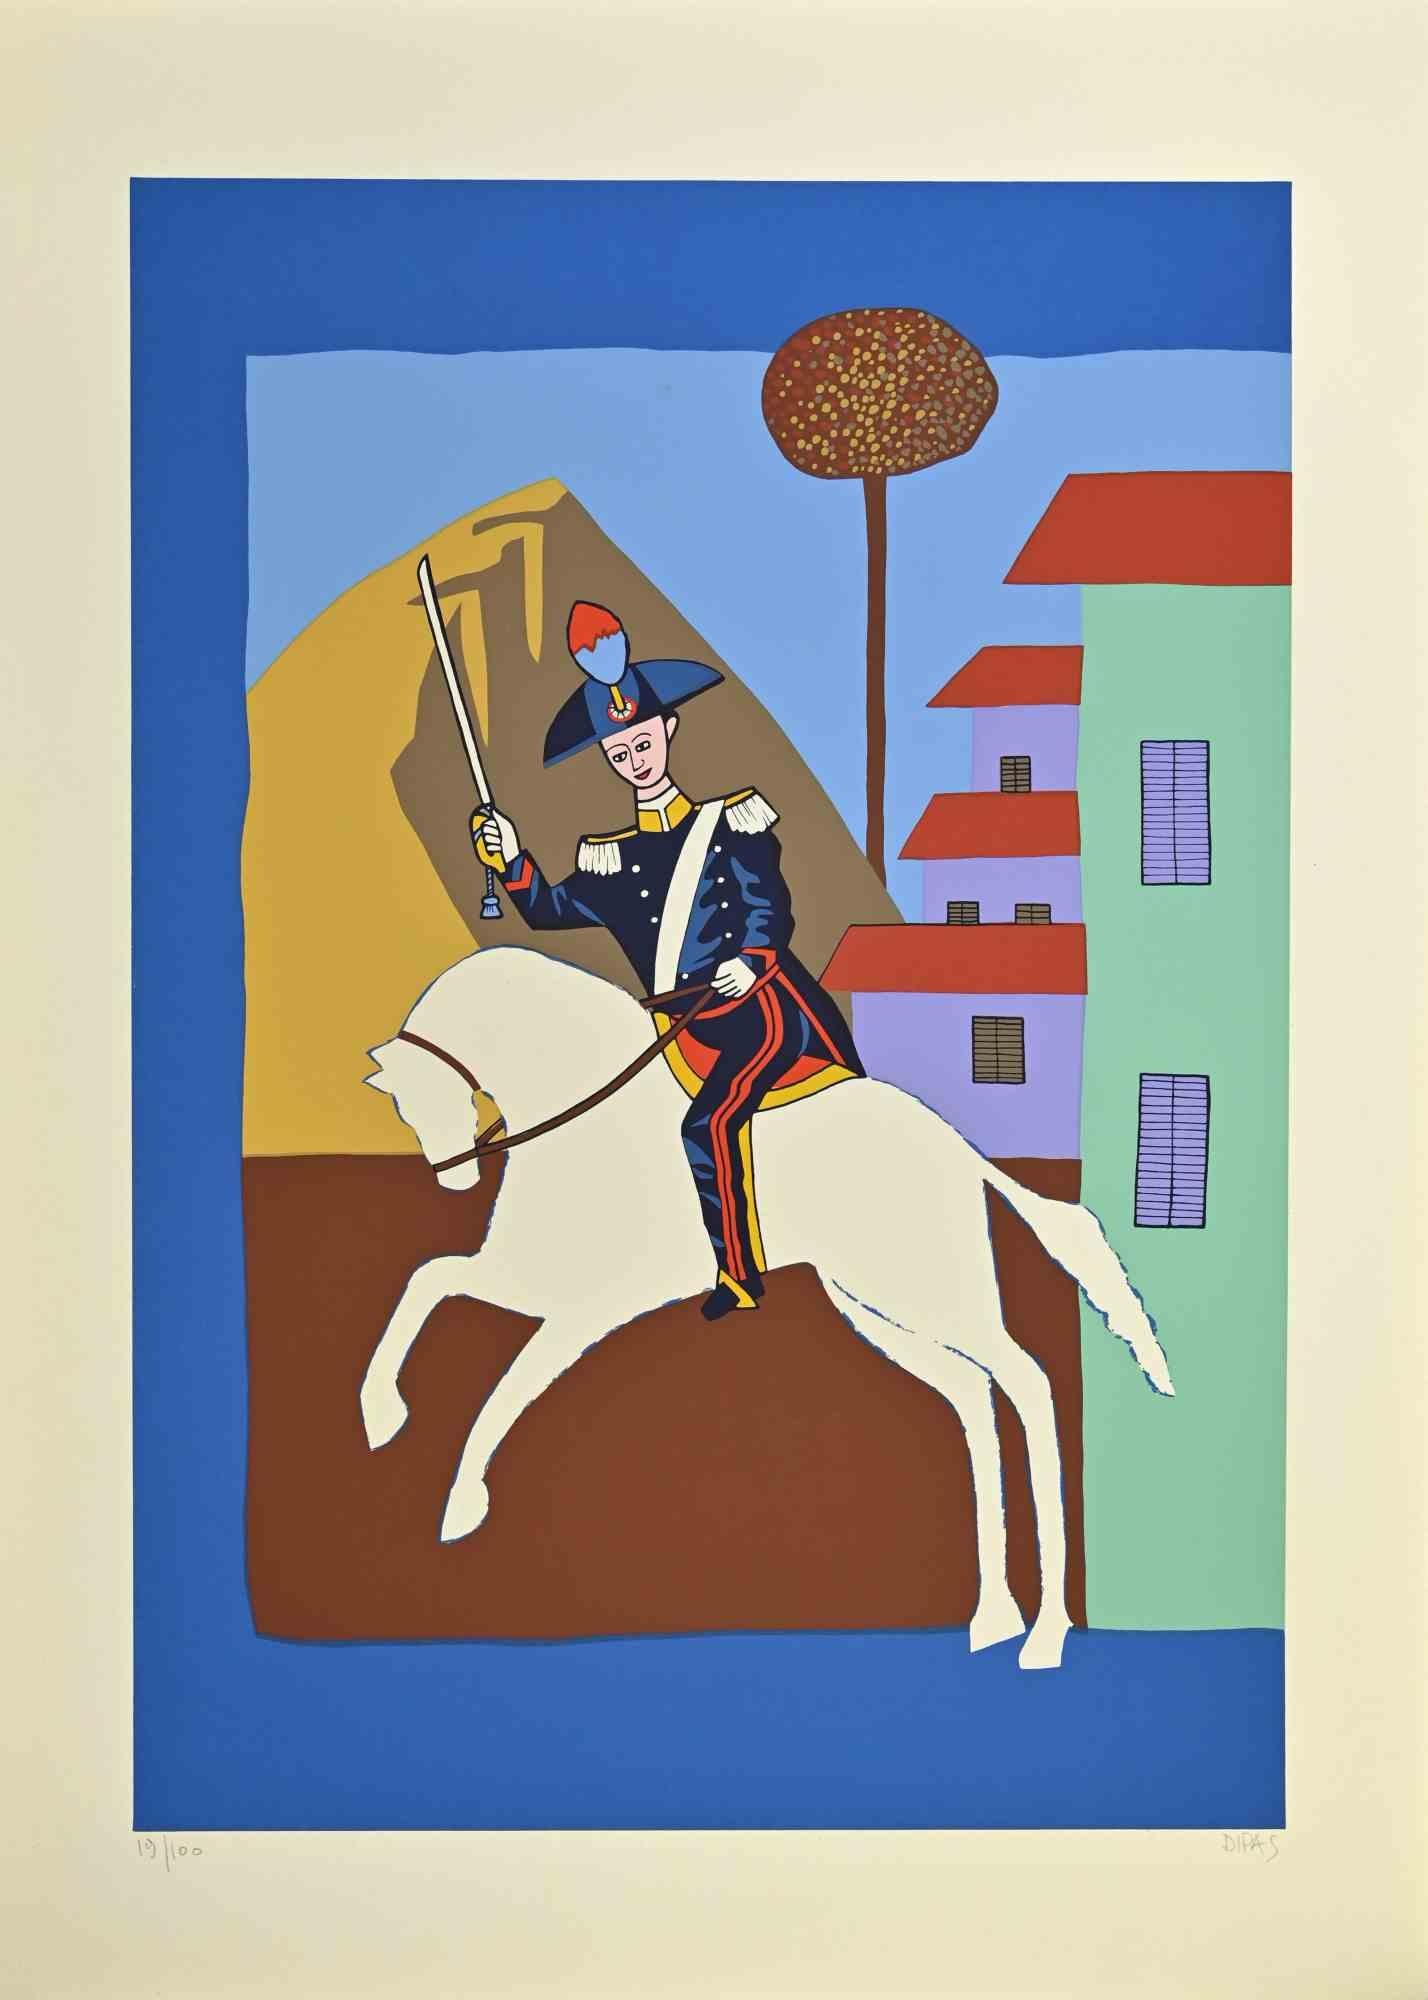 Mousqueton sur cheval est une œuvre d'art contemporain réalisée par l'artiste Dipas dans les années 1970.

Sérigraphie de couleurs mélangées.

Signé à la main dans la marge inférieure droite.

Numéroté dans la marge inférieure gauche.

Édition de